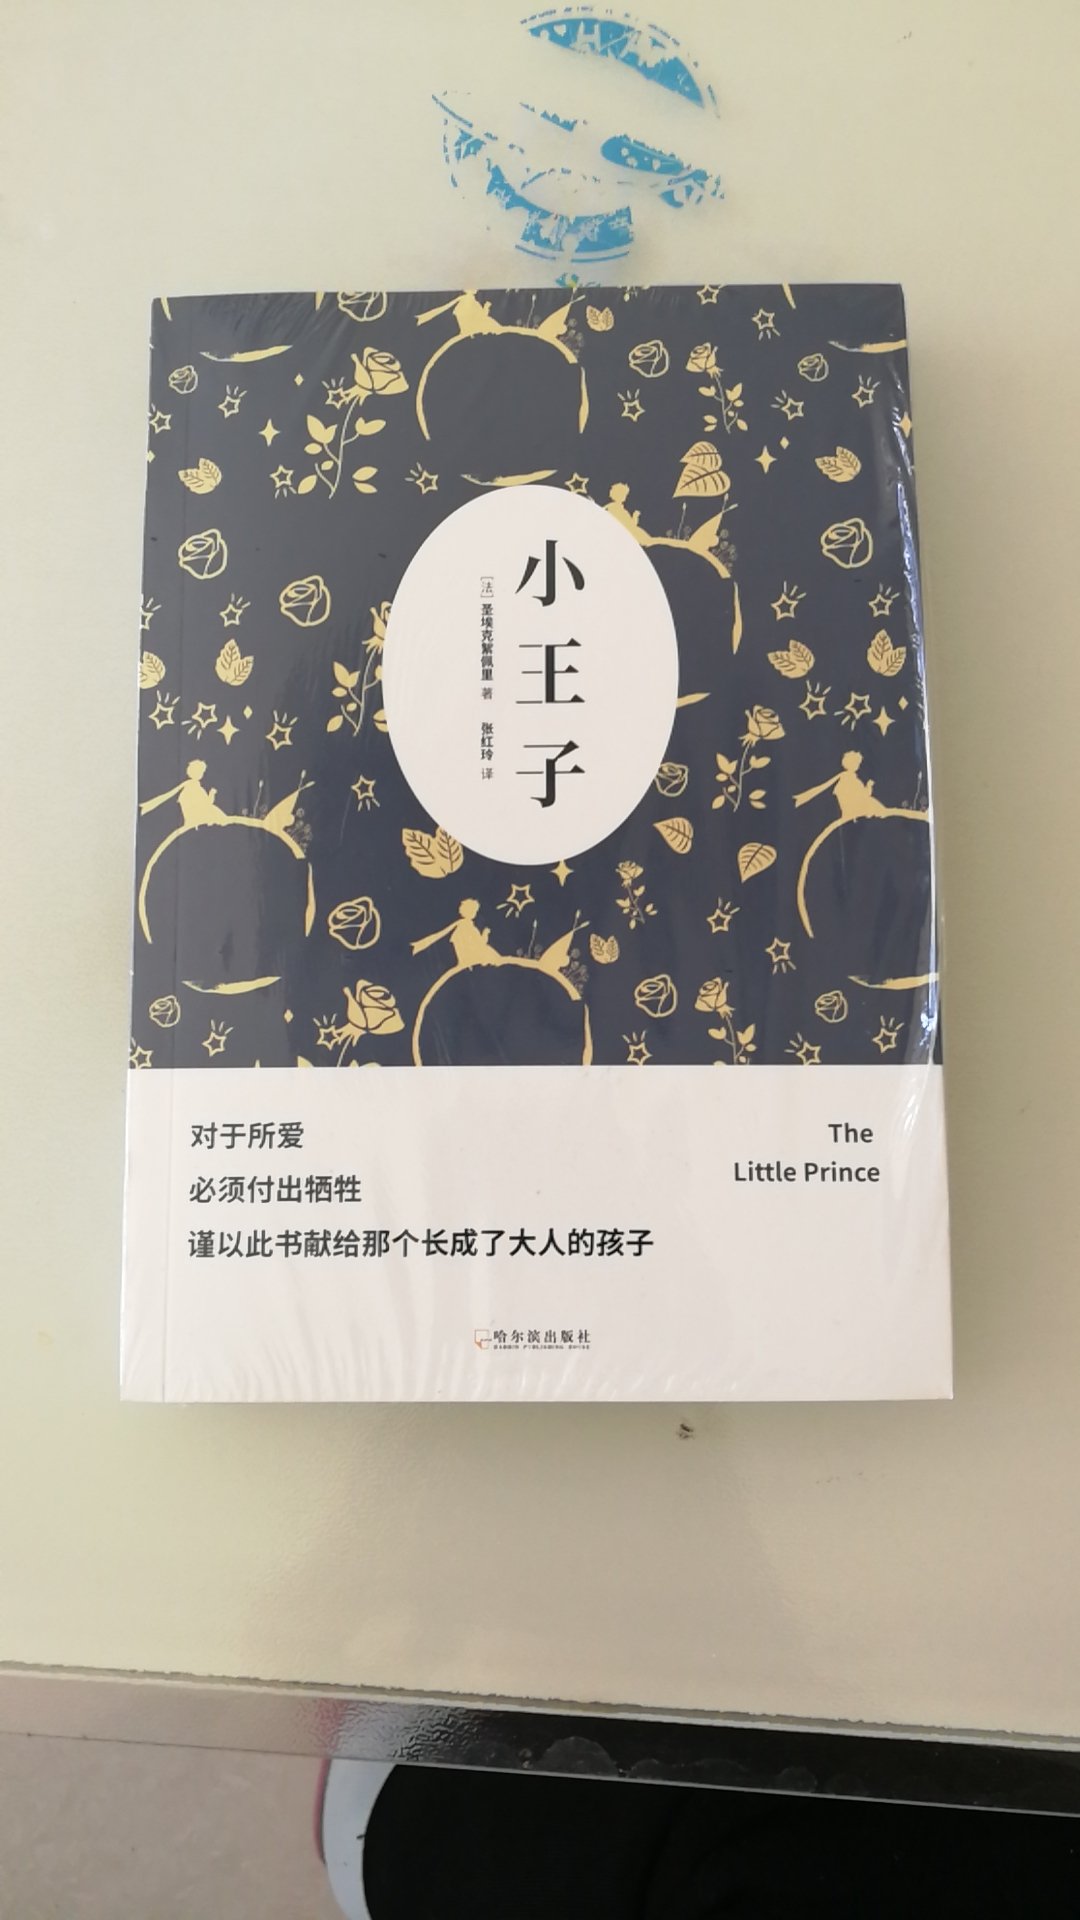 快递速度很快   书本的包装排版很好  读起来很舒服  前面中文后面英文  原文也可以及时看起来  以后会回购